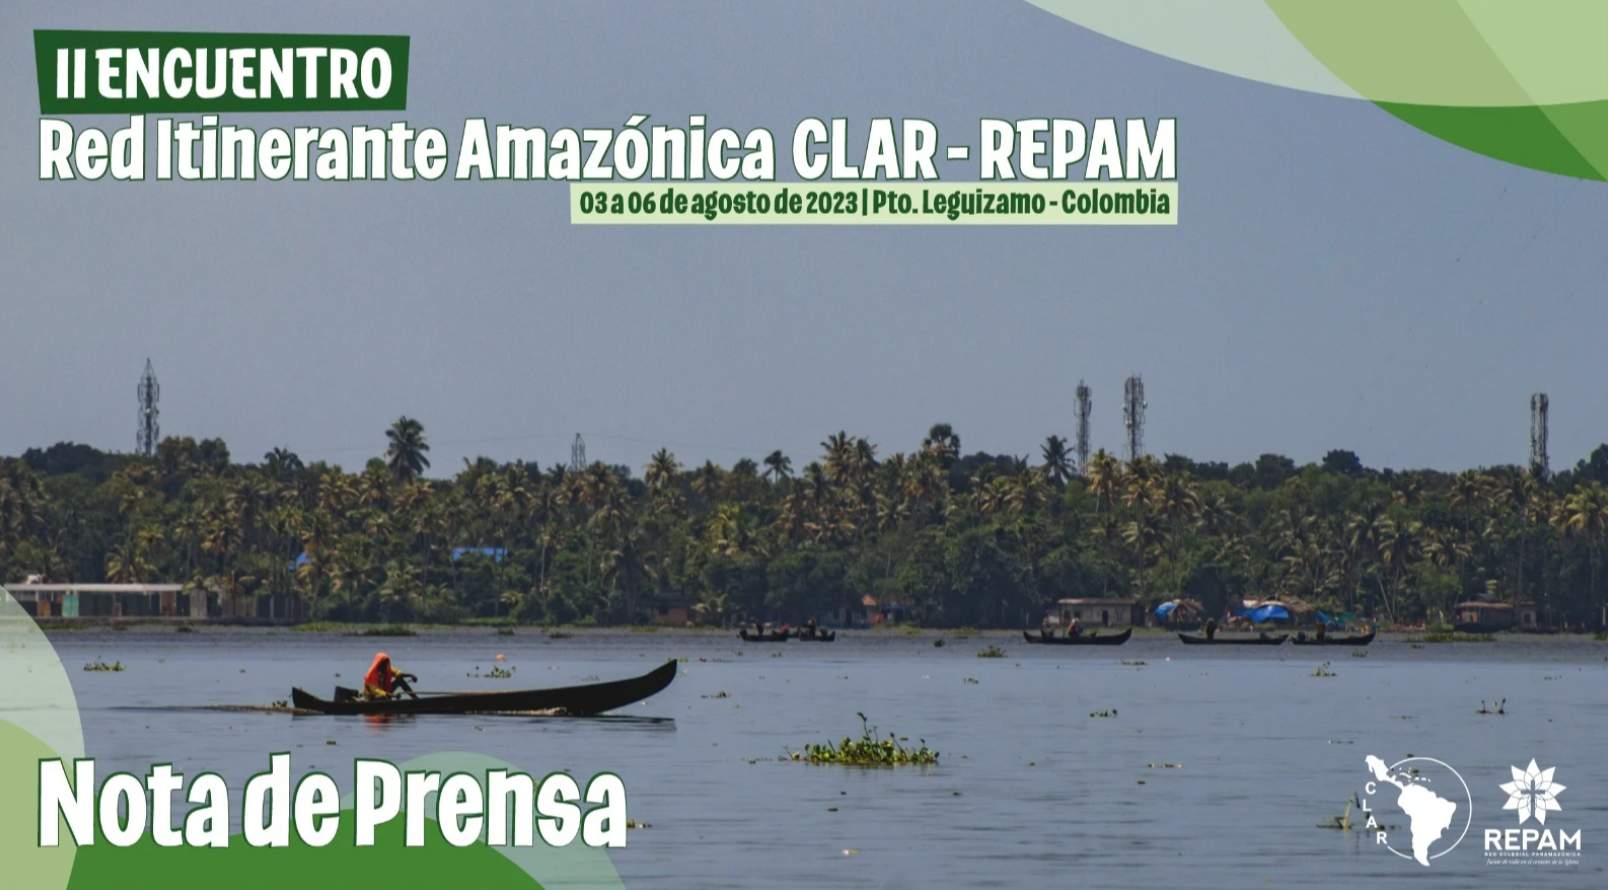 II Encuentro de la Red Itinerante Amazónica Construyendo nuevos caminos de sinodalidad e itinerancia en la Amazonía